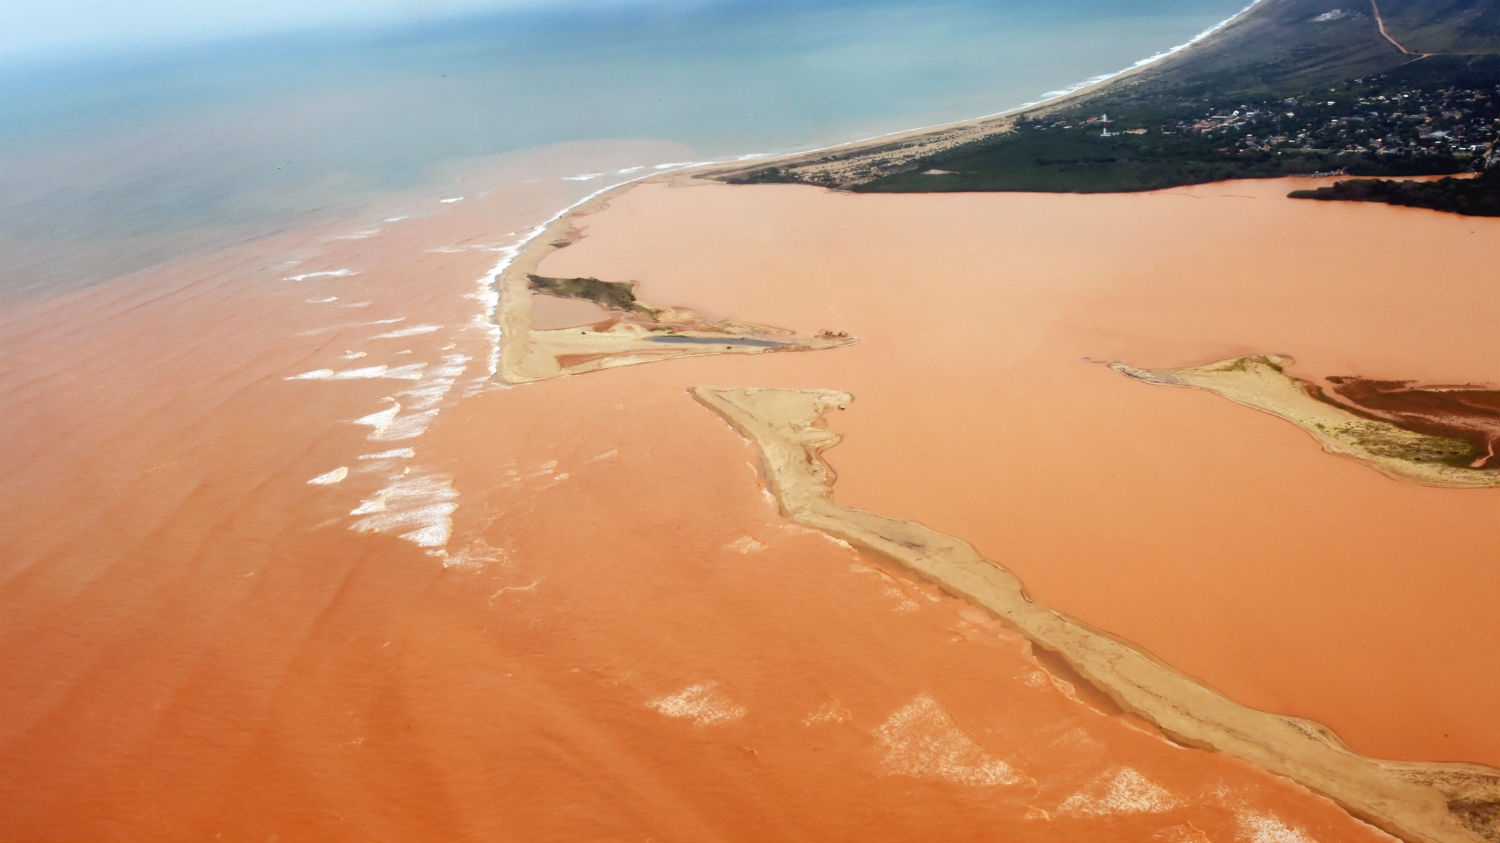  O Rio Doce com as águas vermelhas do minério de ferro já no território do Espírito Santo, em novembro passado (AFP/Estado do Espírito Santo/Fred Loureiro)